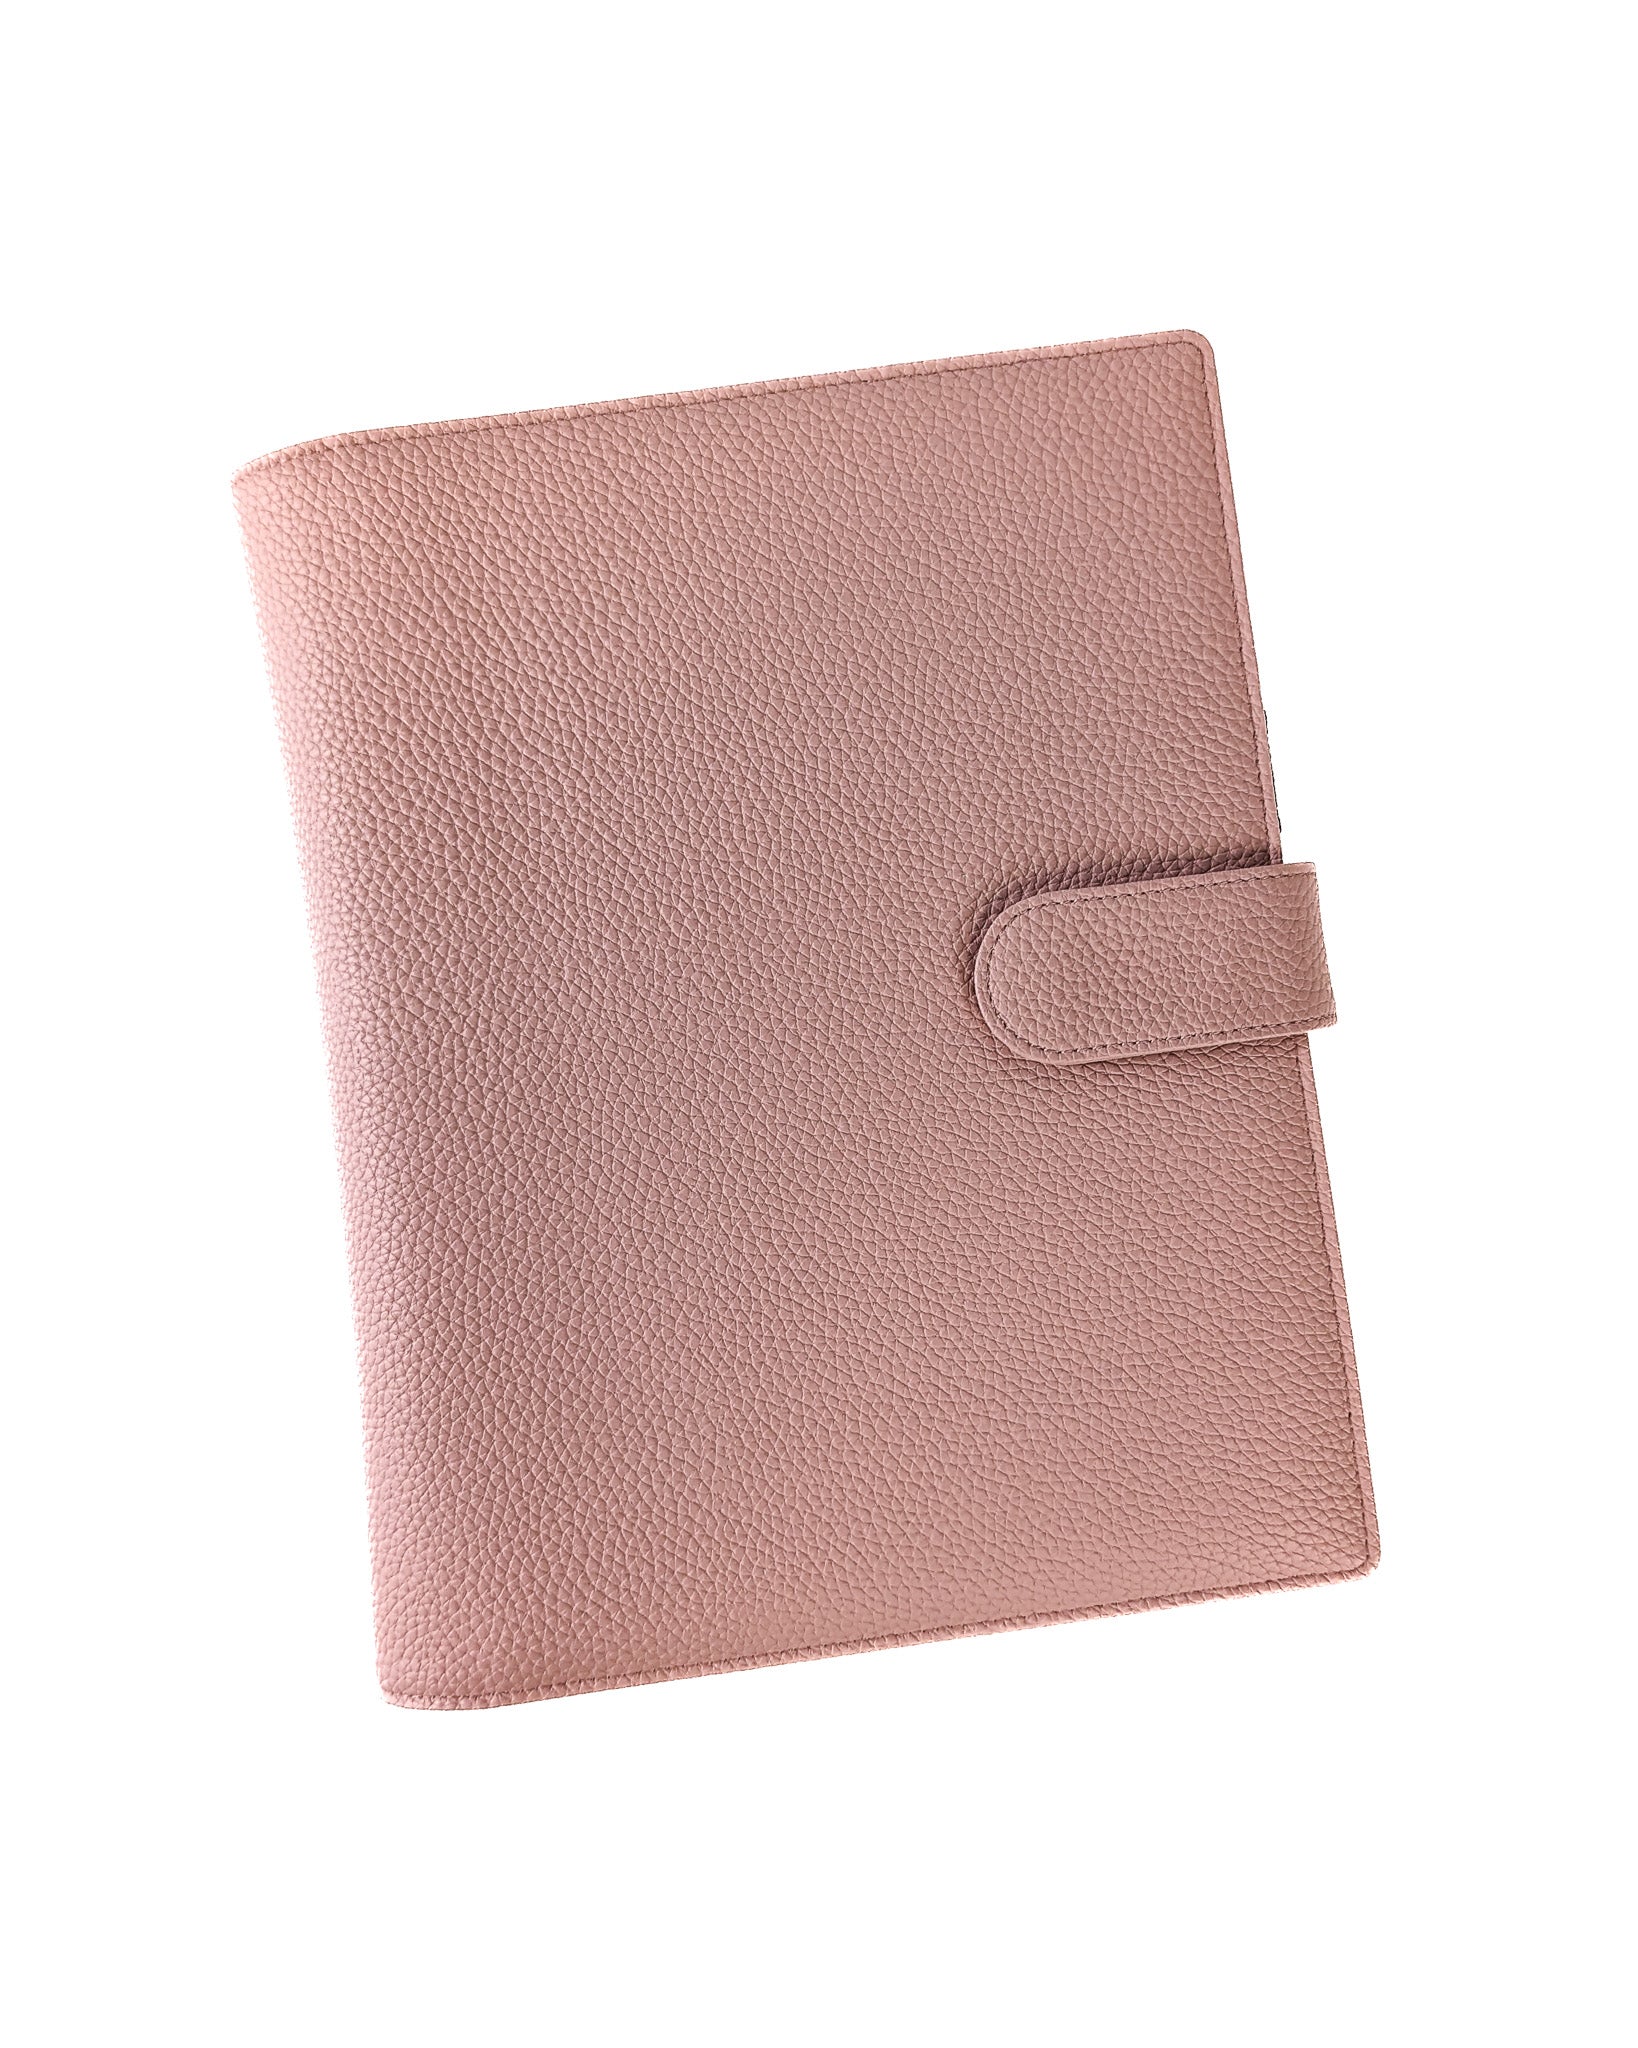 Wrap-around Discbound Planner Cover |  Blush Pink